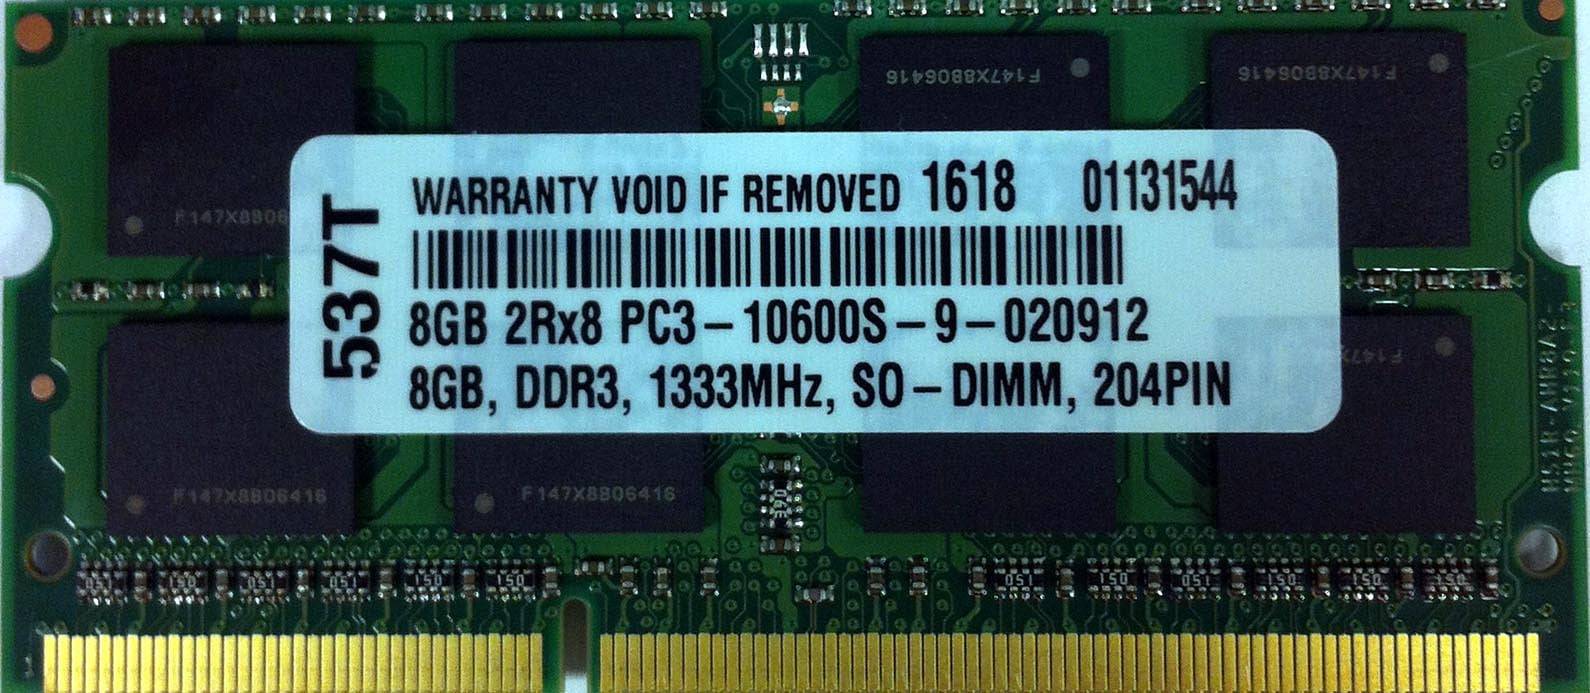 4GB DDR3 MEMORY RAM FOR Lenovo ThinkPad X201s 5129